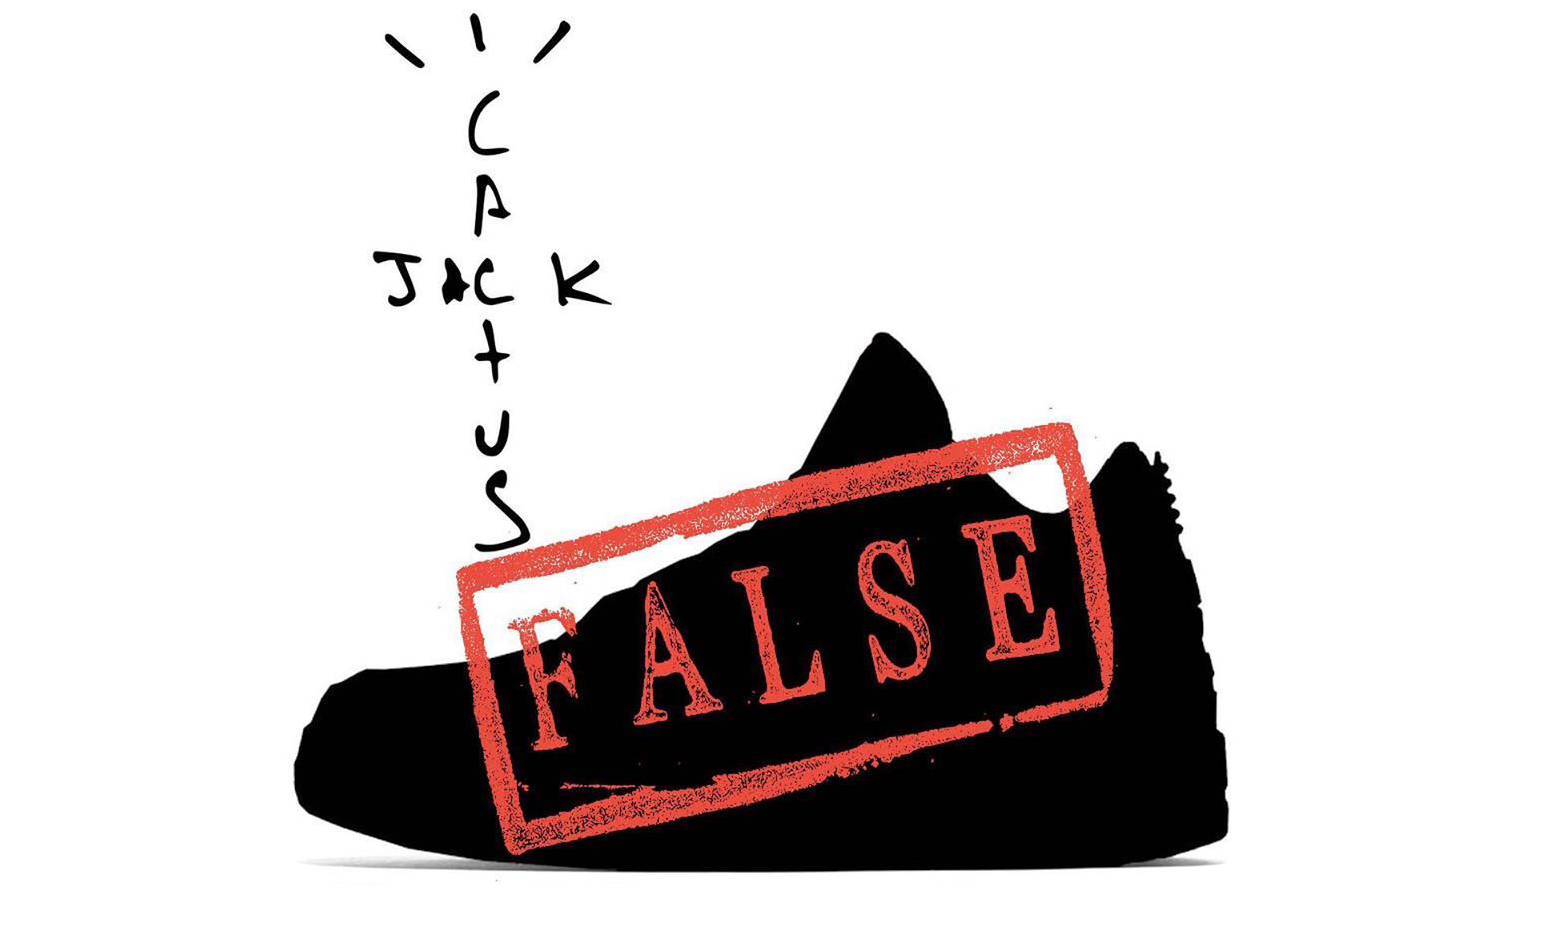 剧情反转，据称 Nike 确认 Travis Scott x Air Jordan III 为假消息